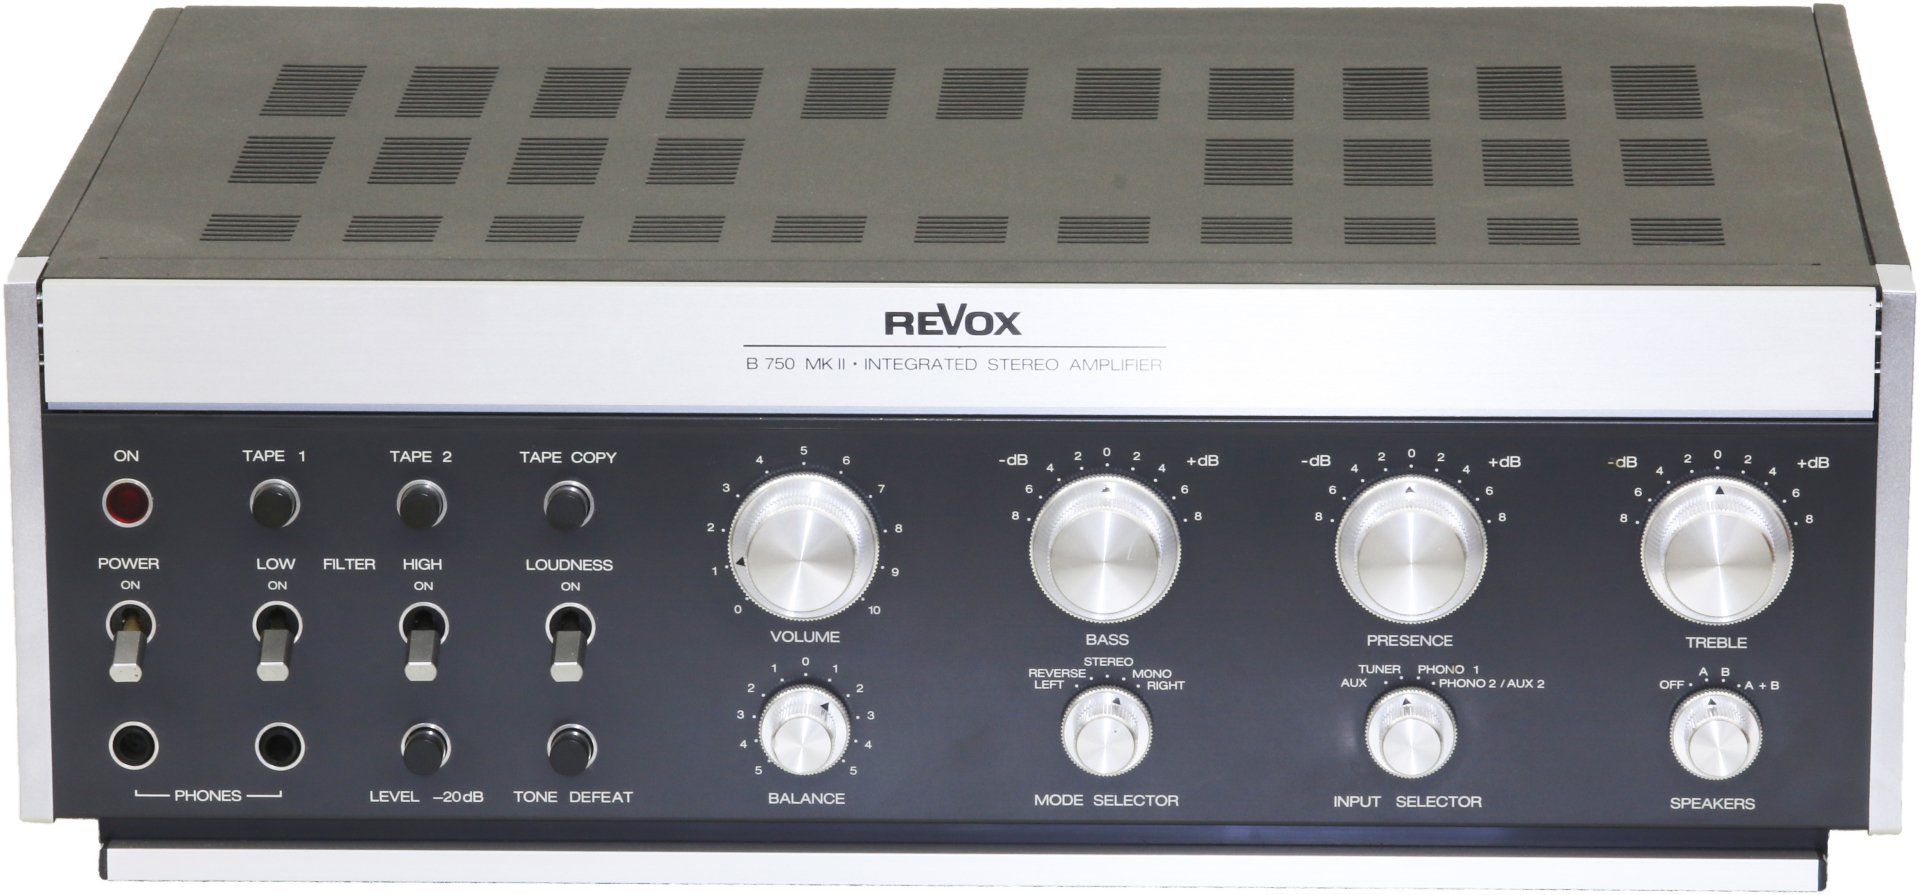 Revox B750 Vollverstärker revox-Online